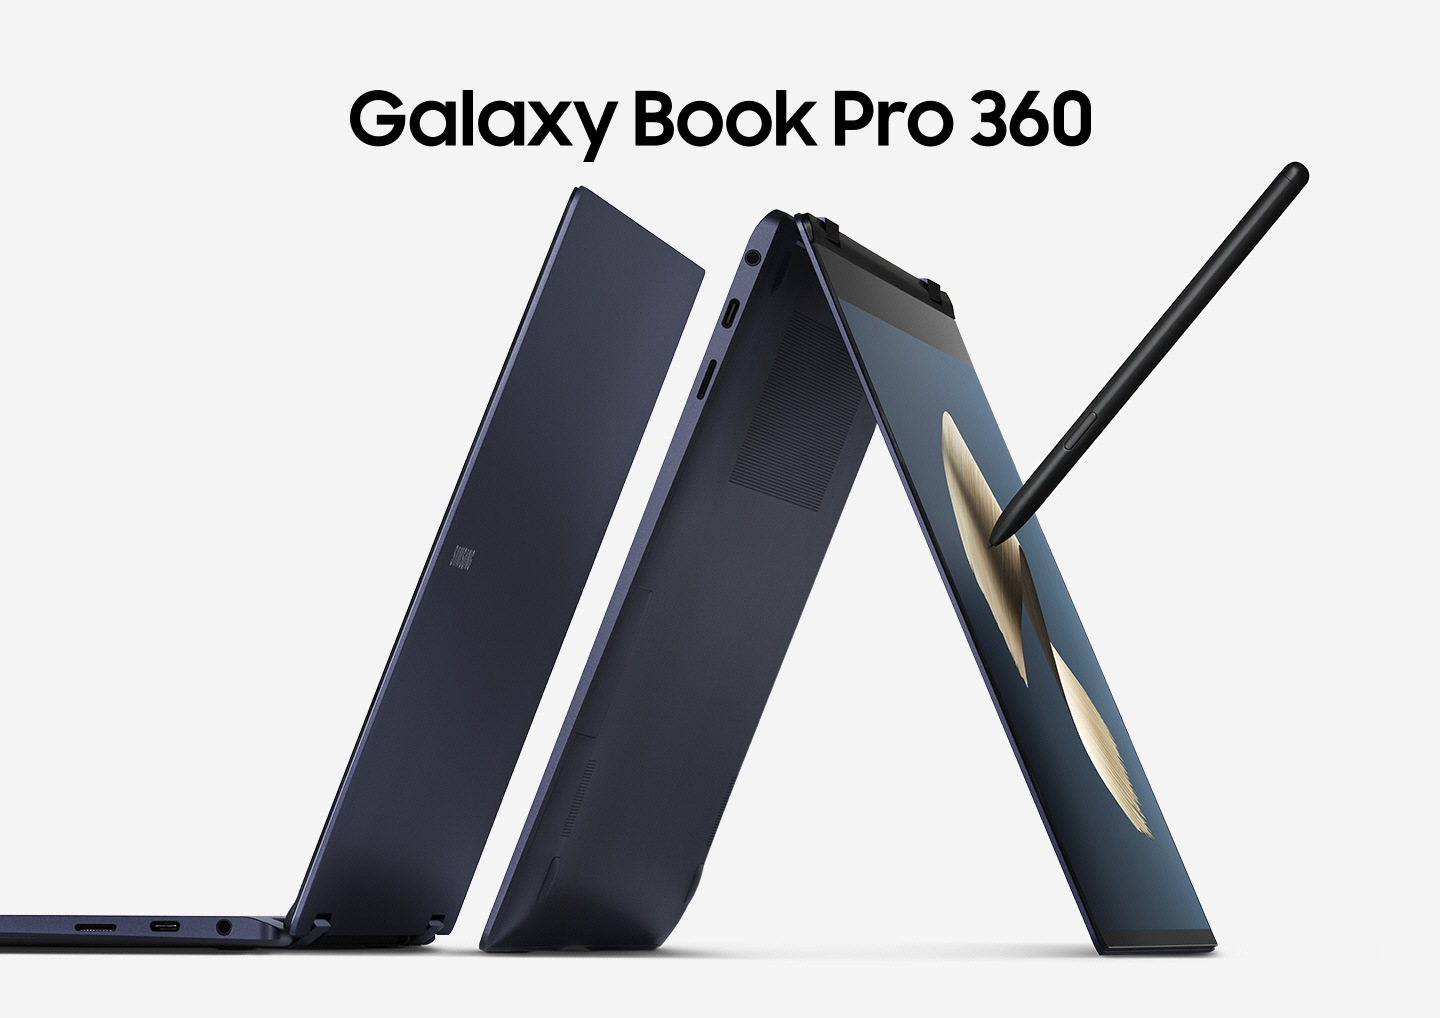 دو یکسان 360 Galaxy Book Pro 360 به رنگ آبی عرفانی در کنار هم قرار می گیرند. یکی از آنها مجهز به سبک S ، در حالت چادر است و در لبه صفحه و صفحه کلید استراحت می کند. Galaxy Book Pro 360 'نوشته شده است